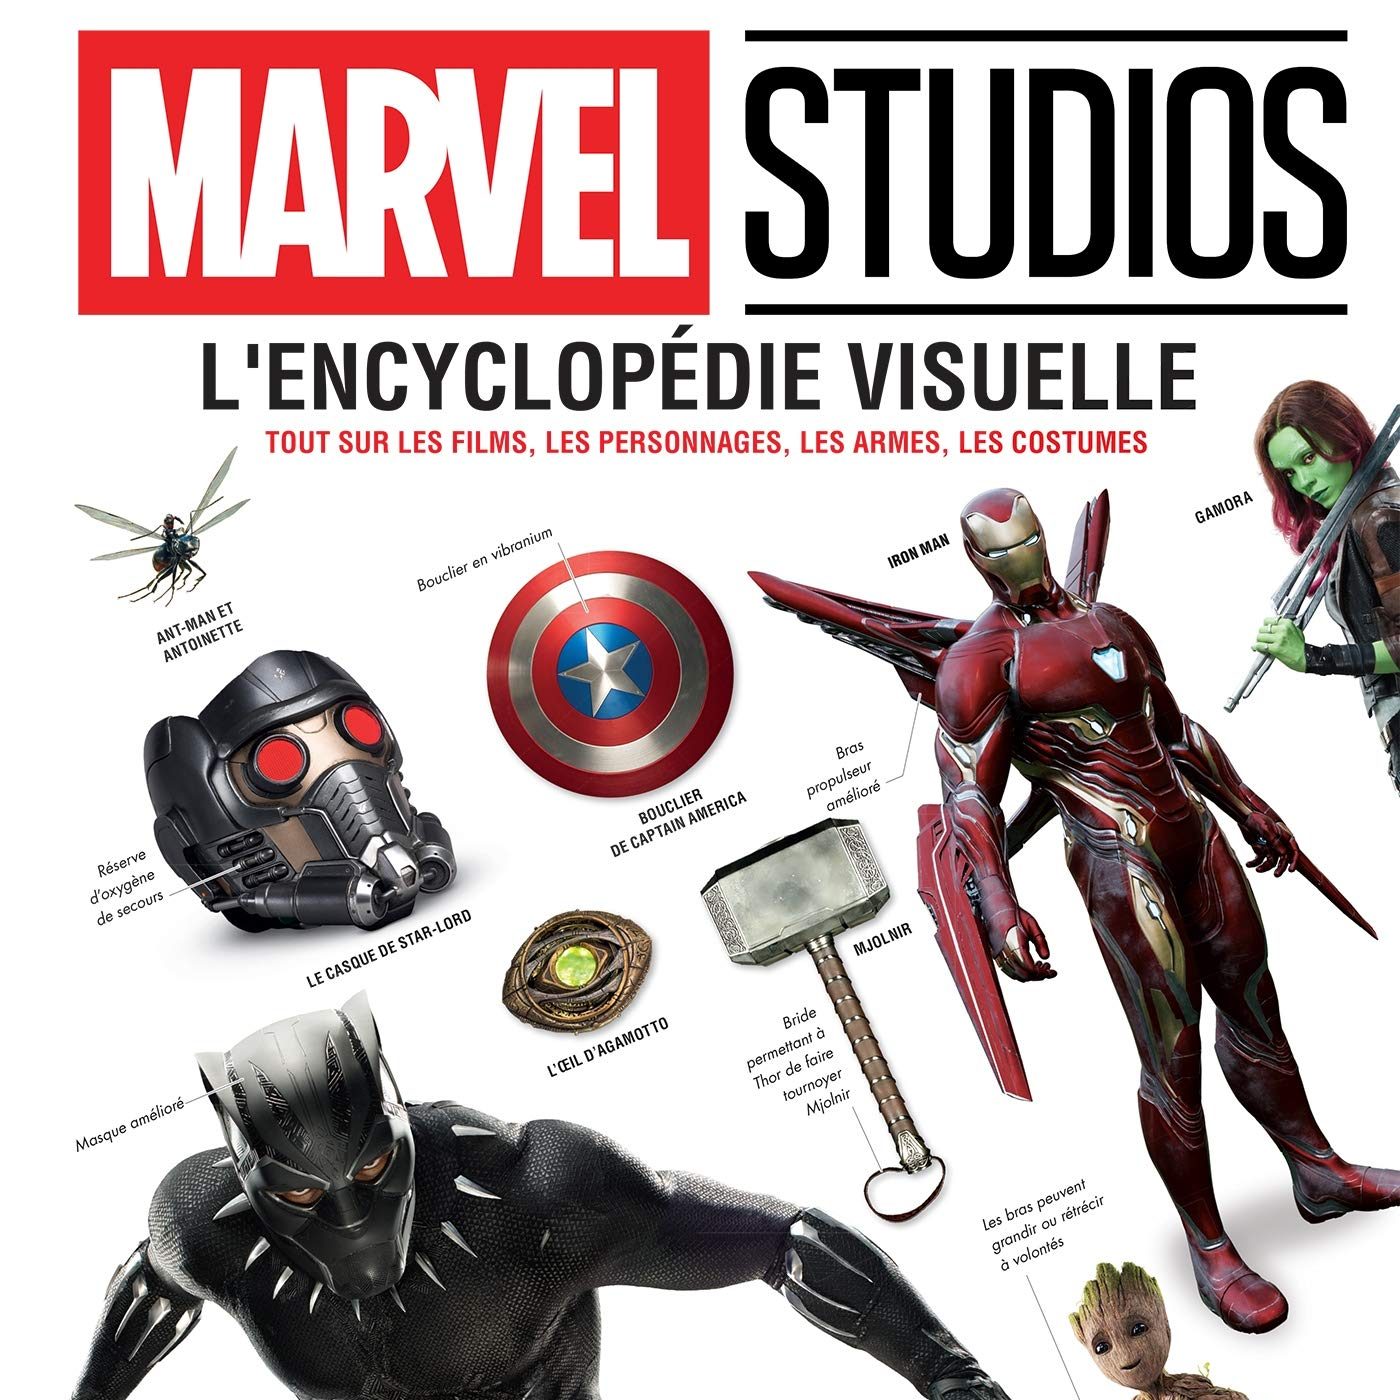 Marvel Studios : L'encyclopédie visuelle